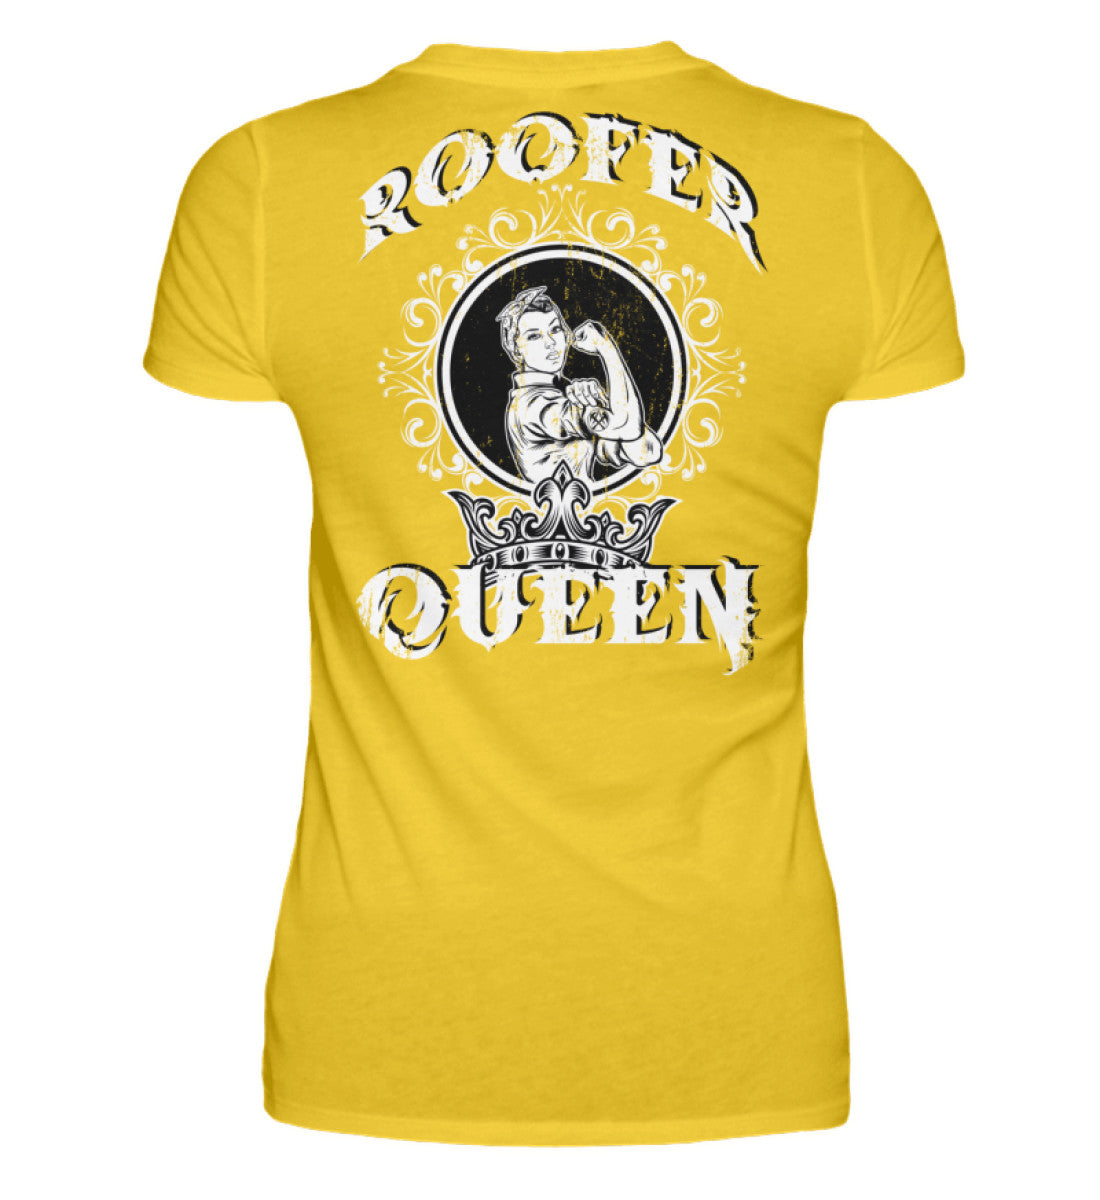 Roofer Queen Version 1.0  - Damenshirt €26.95 Rooferking